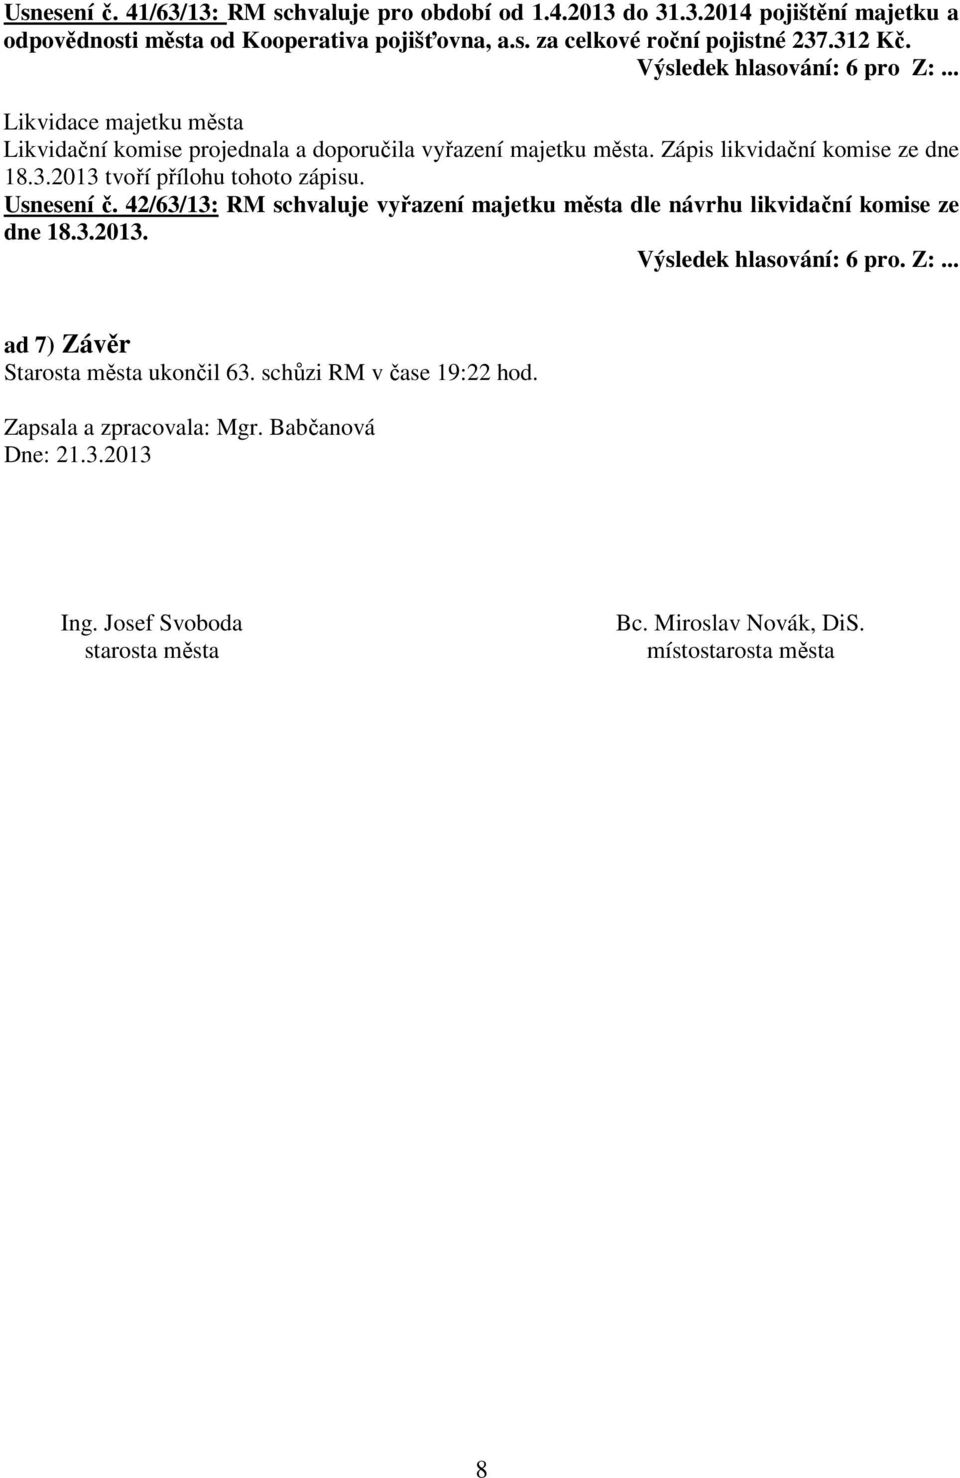 Usnesení č. 42/63/13: RM schvaluje vyřazení majetku města dle návrhu likvidační komise ze dne 18.3.2013. Výsledek hlasování: 6 pro. Z:.